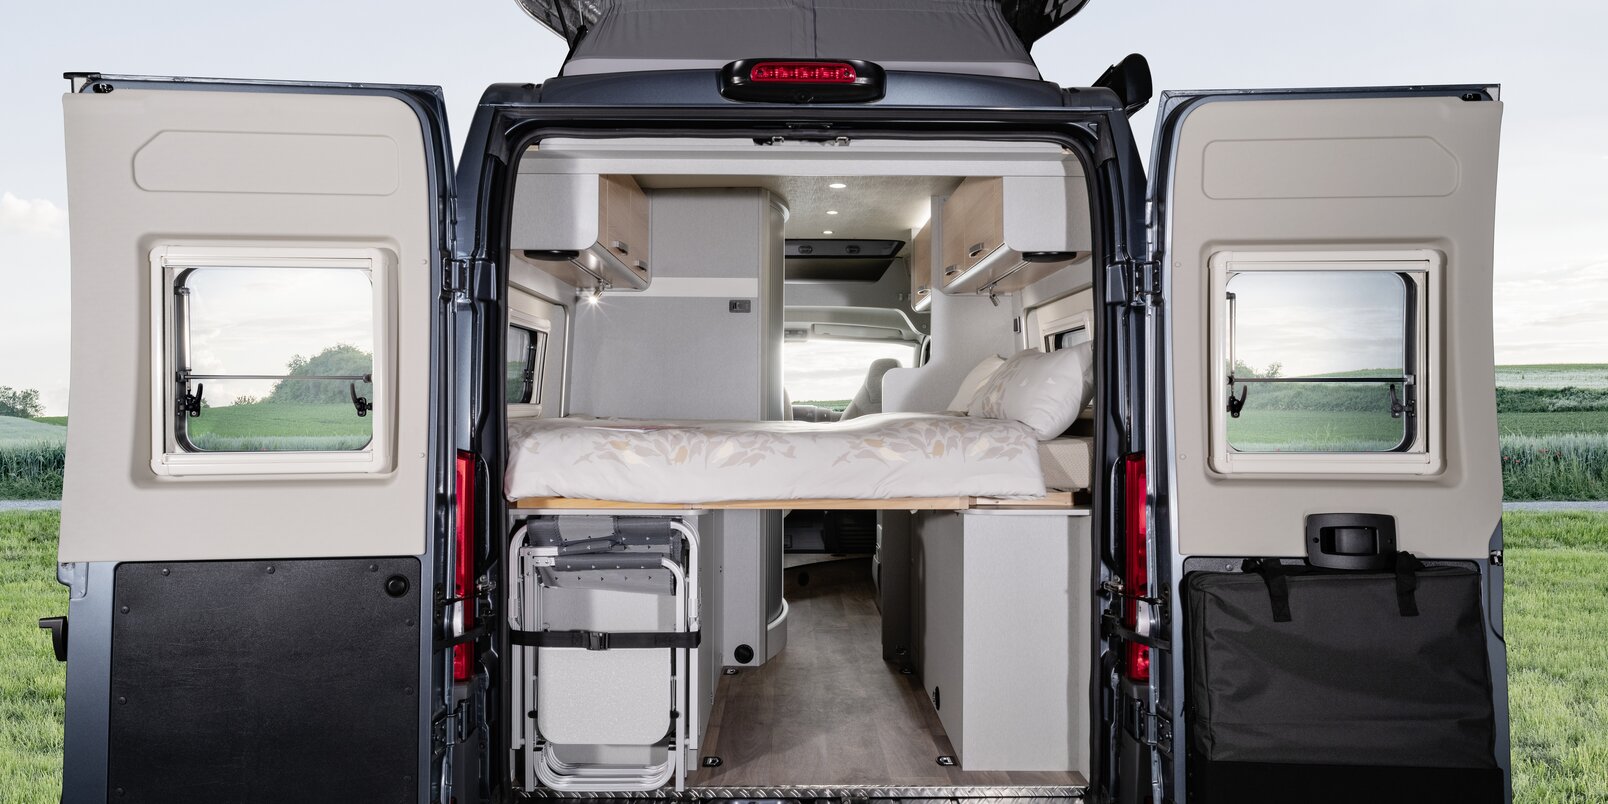 Porte posteriori aperte, letto con lenzuola, sedie da campeggio sistemate, visuale interna fino alla cabina guida del Free HYMER in un prato